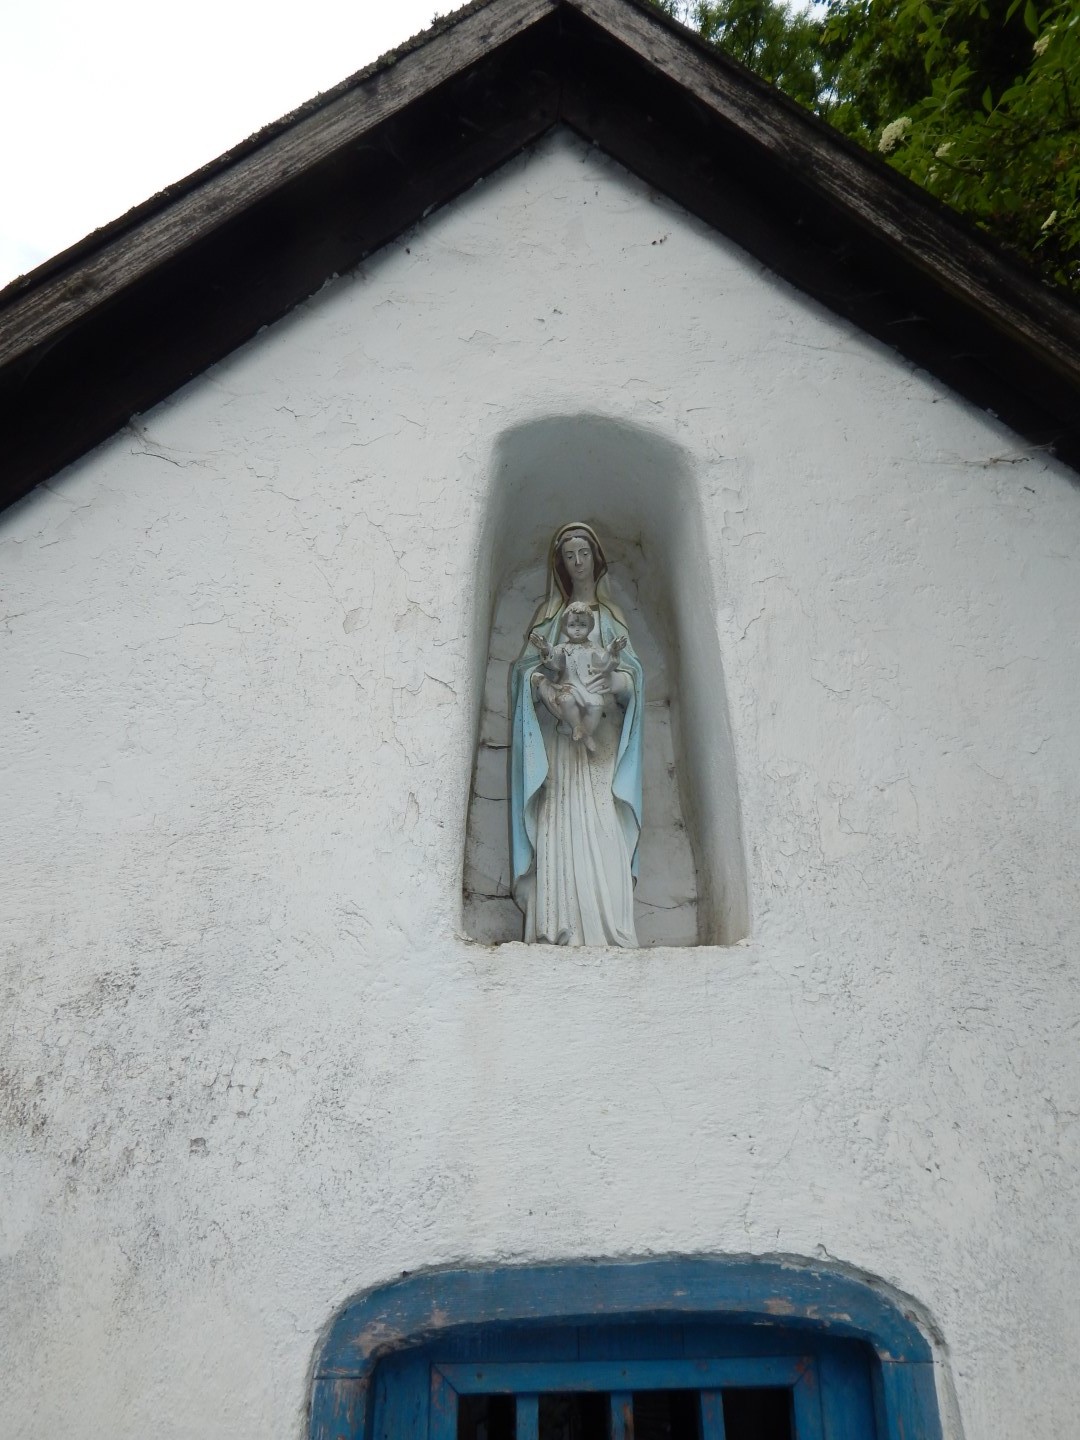 Zdjęcie przedstawia figurę Matki Boskiej z Dzieciątkiem w białej wnęce. Wyżej widać szczyt dachu, a poniżej część niebieskich drzwi. 